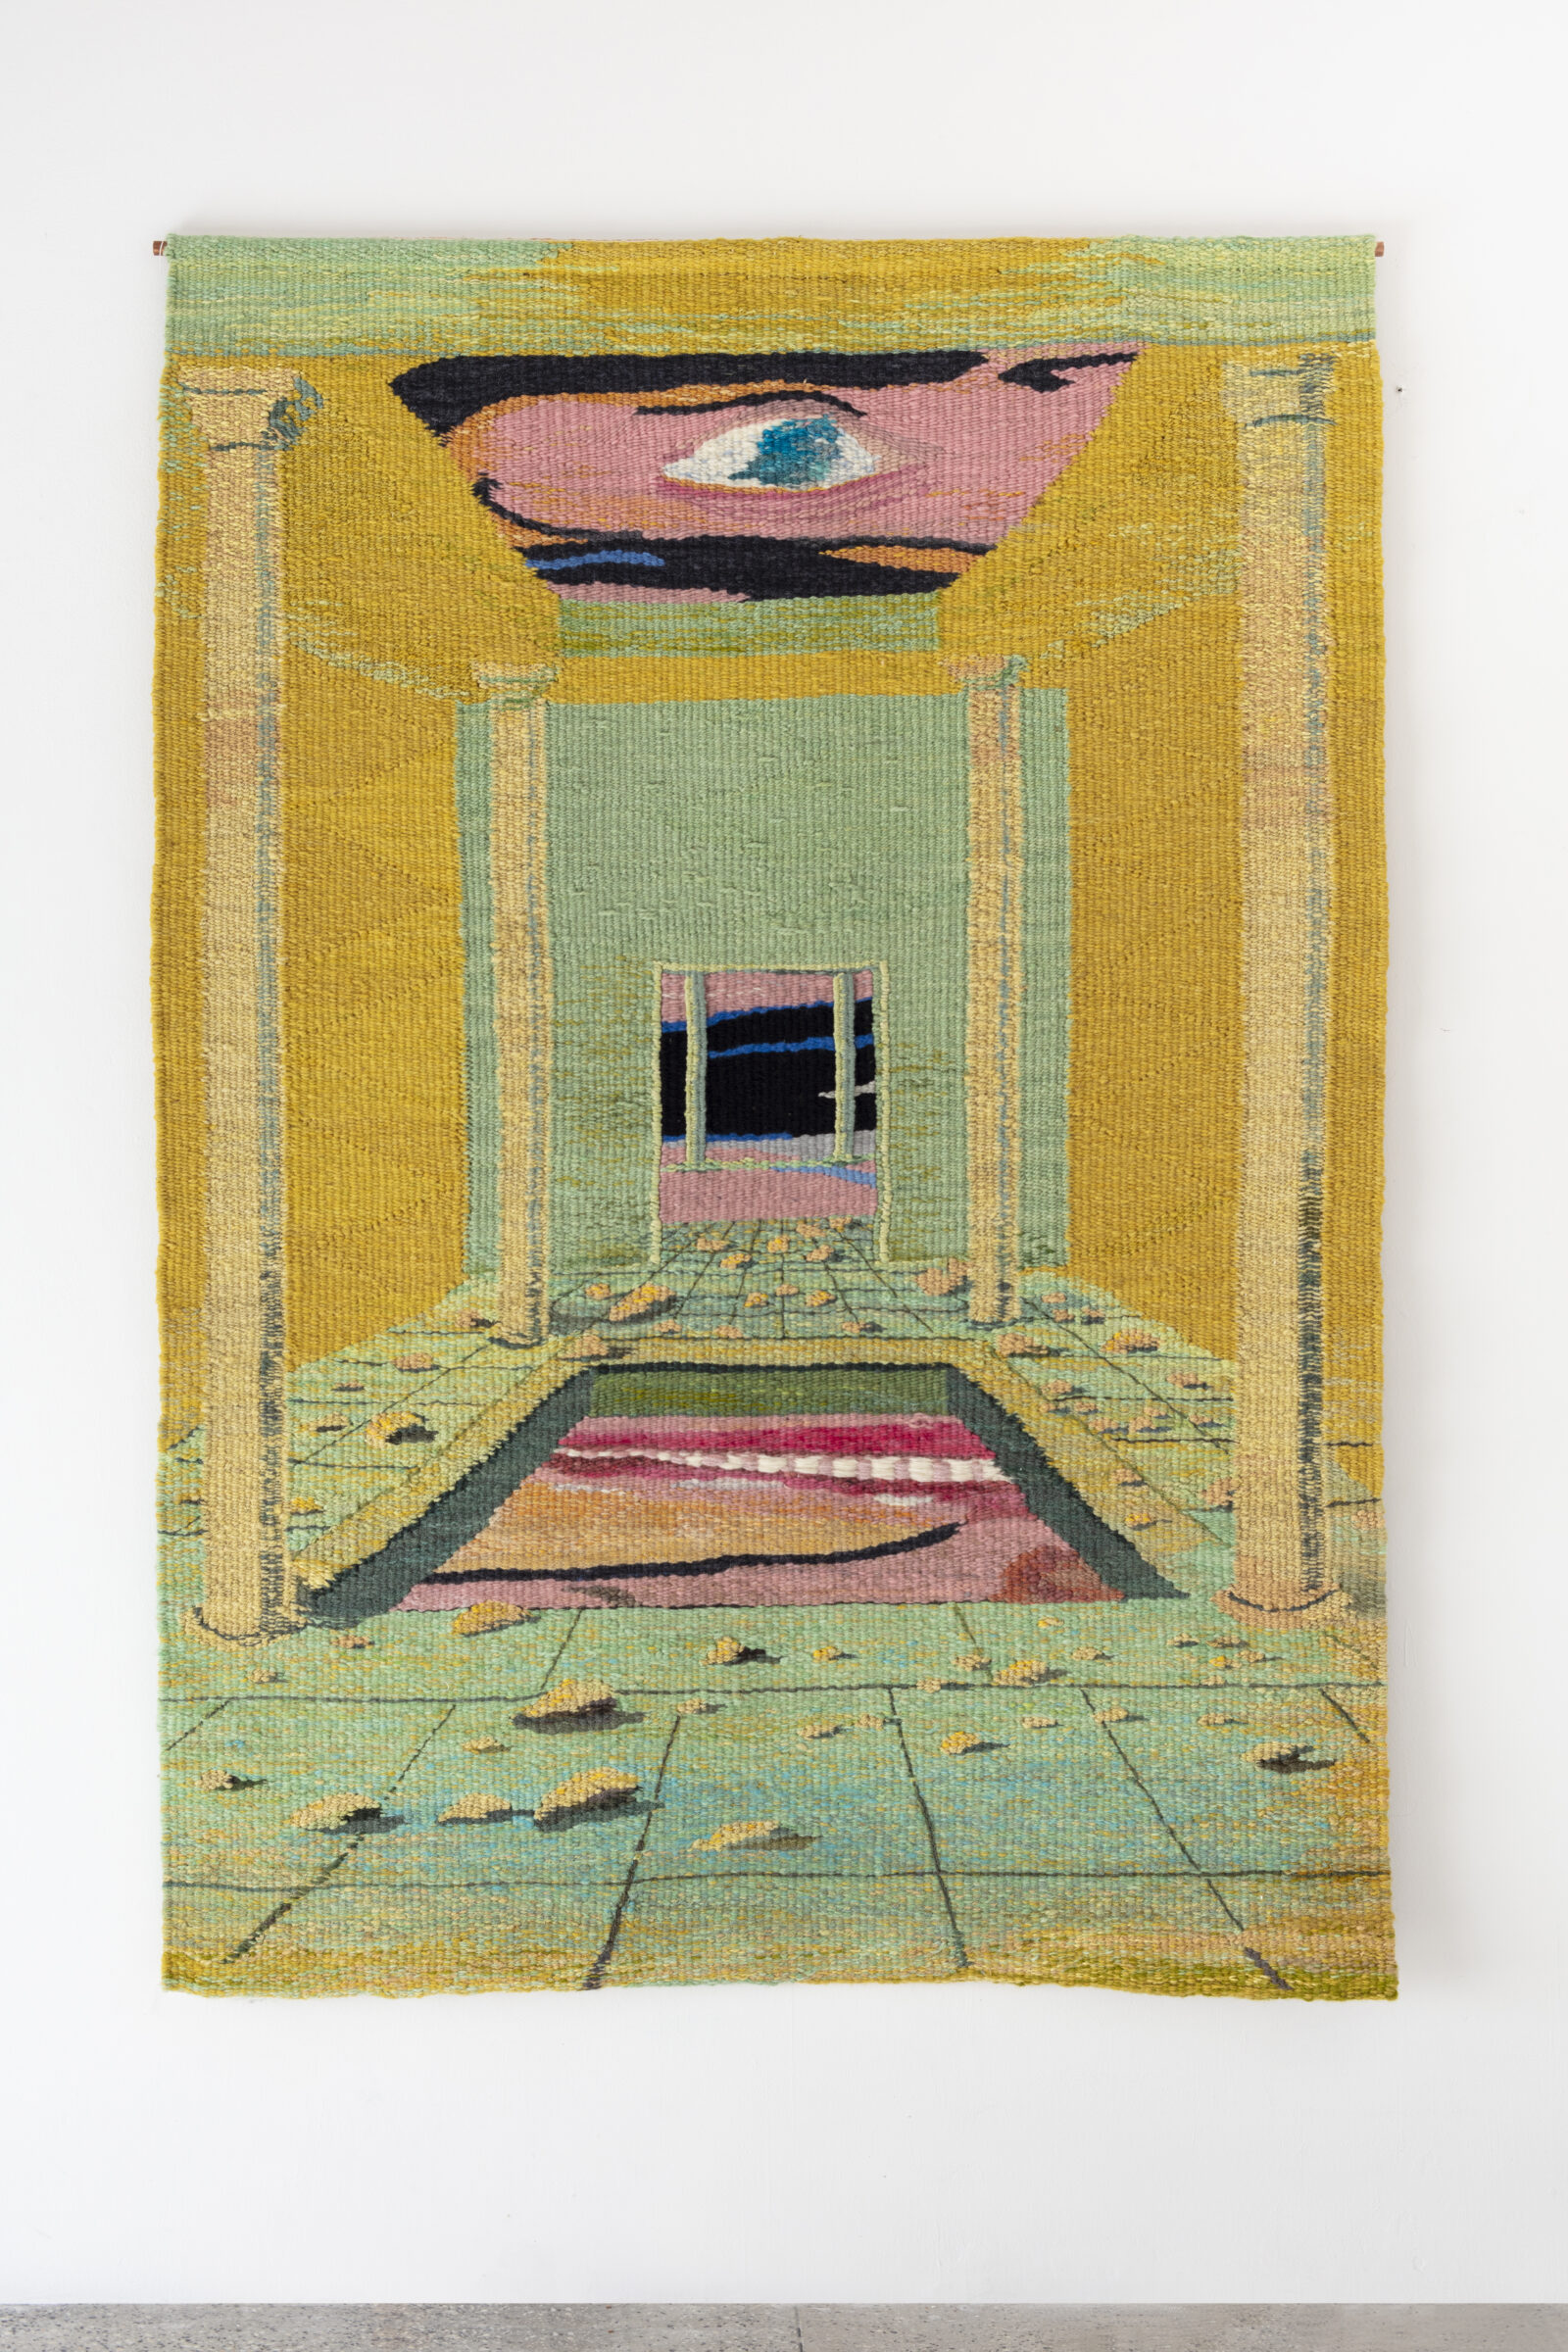 Tomasz Kowalski, Alicja Kowalska
Untitled
2018
tapestry
180 × 125 cm